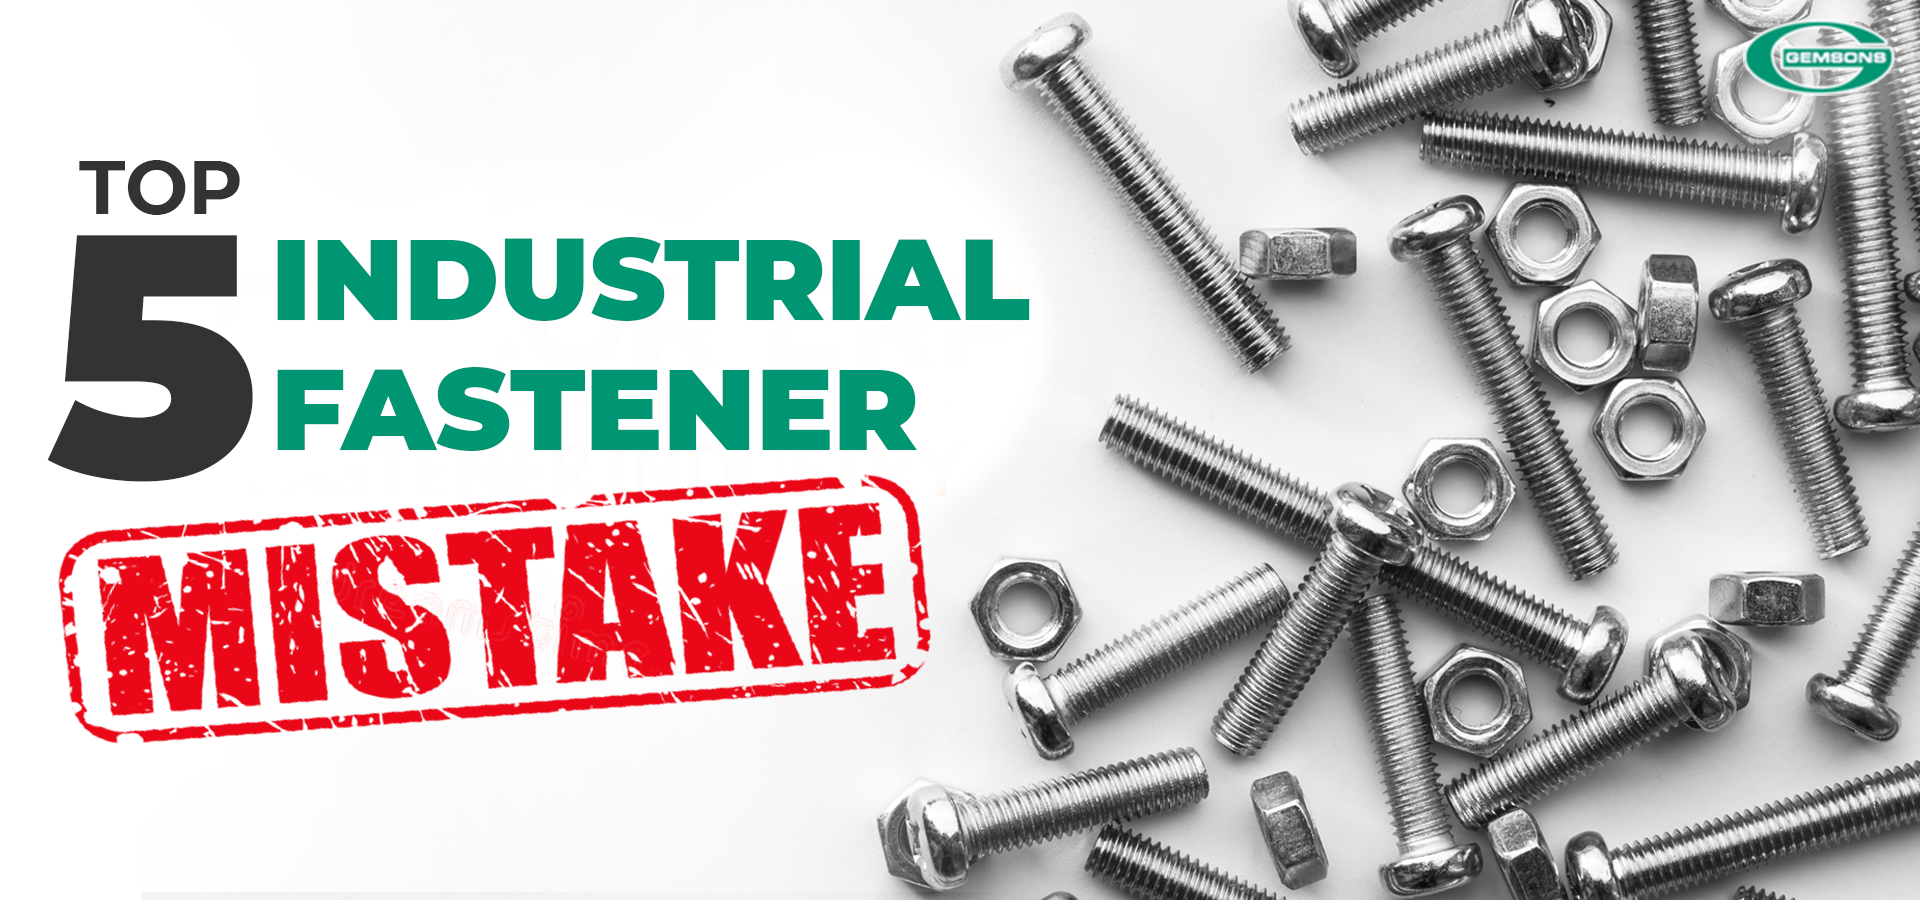 Top 5 Industrial Fastener Mistakes